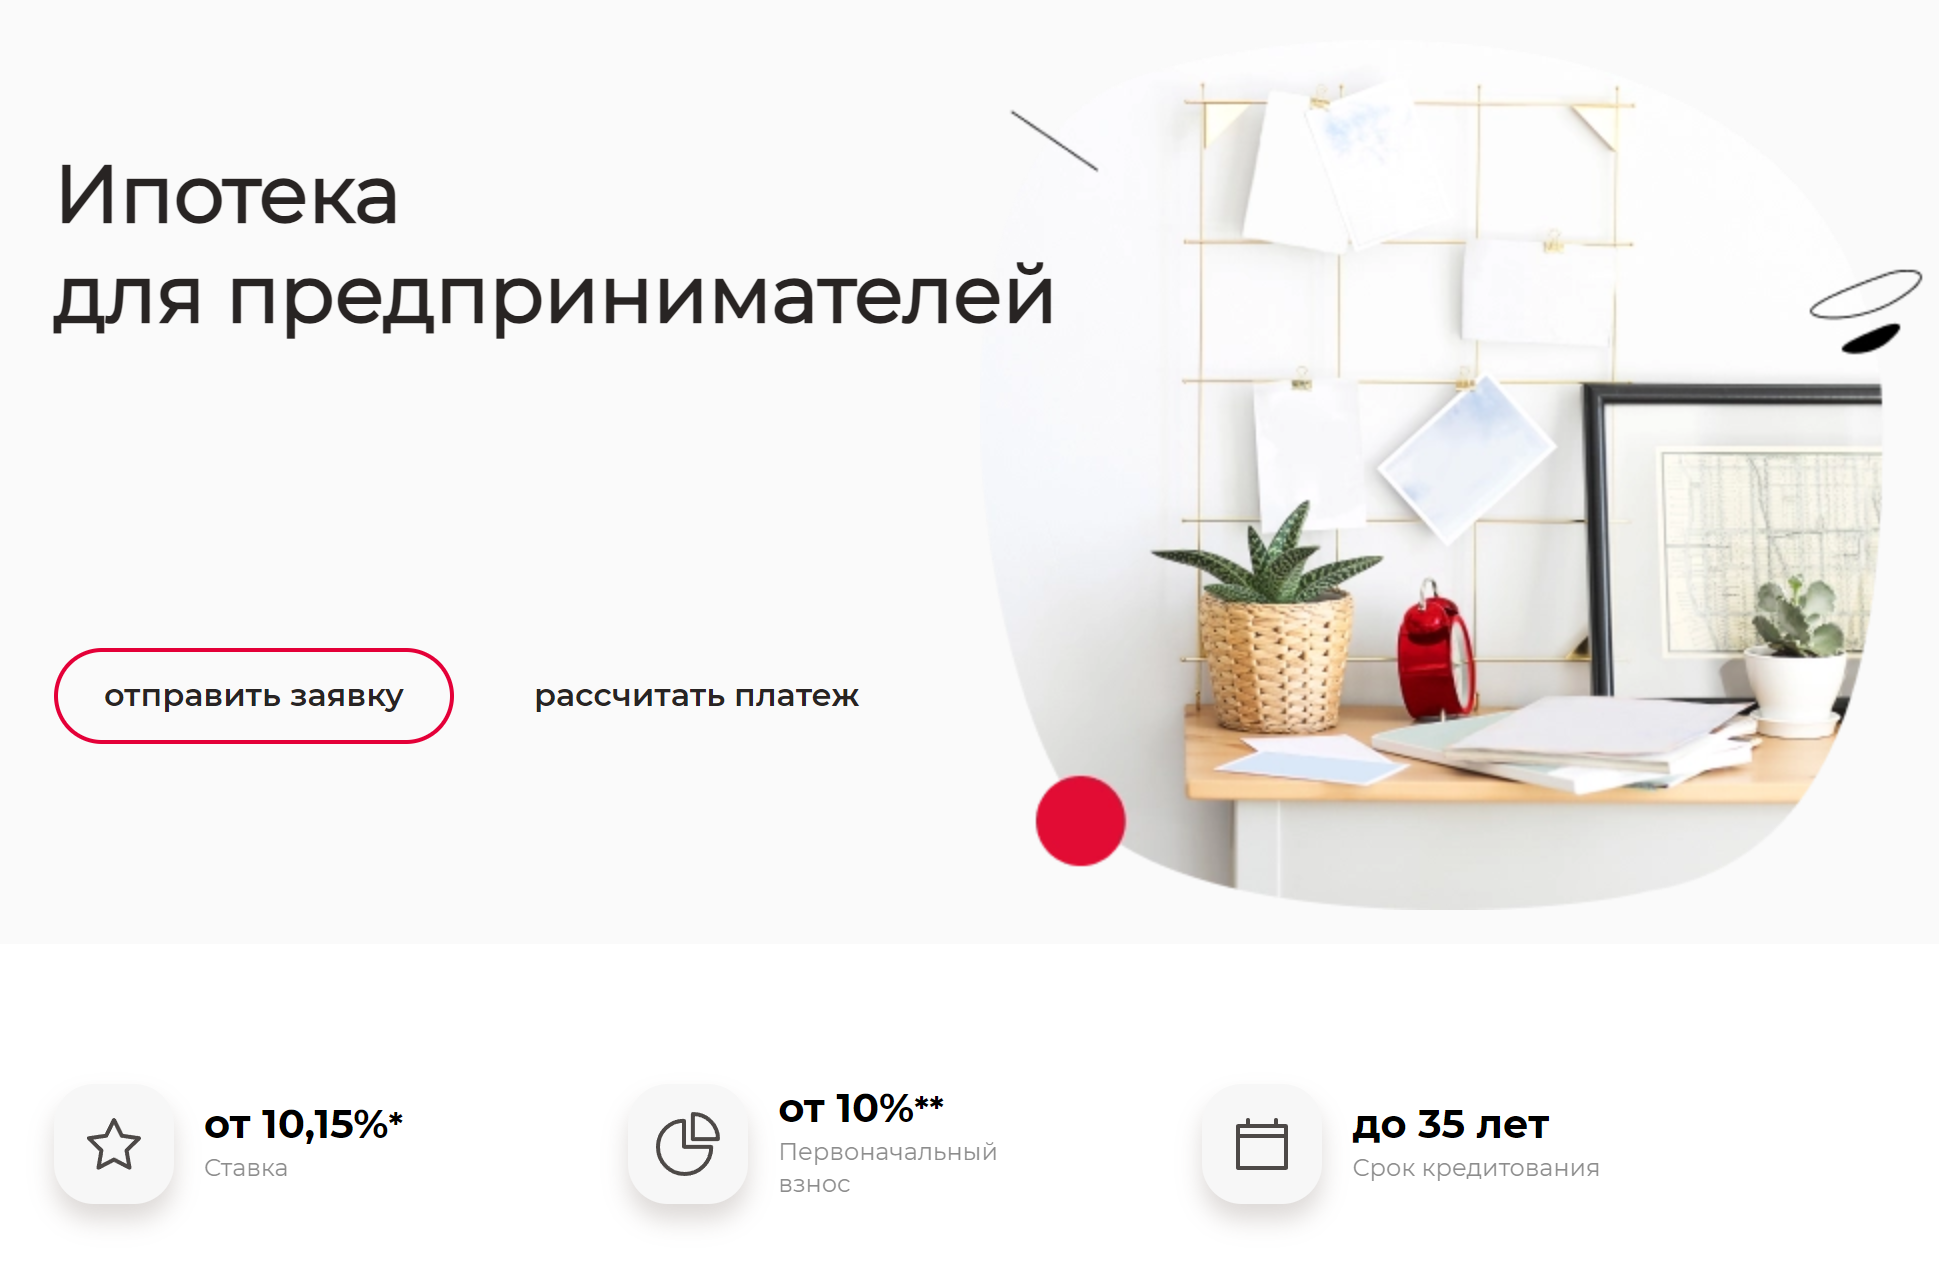 А у Росбанка есть специальная программа для предпринимателей. Источник: rosbank-dom.ru